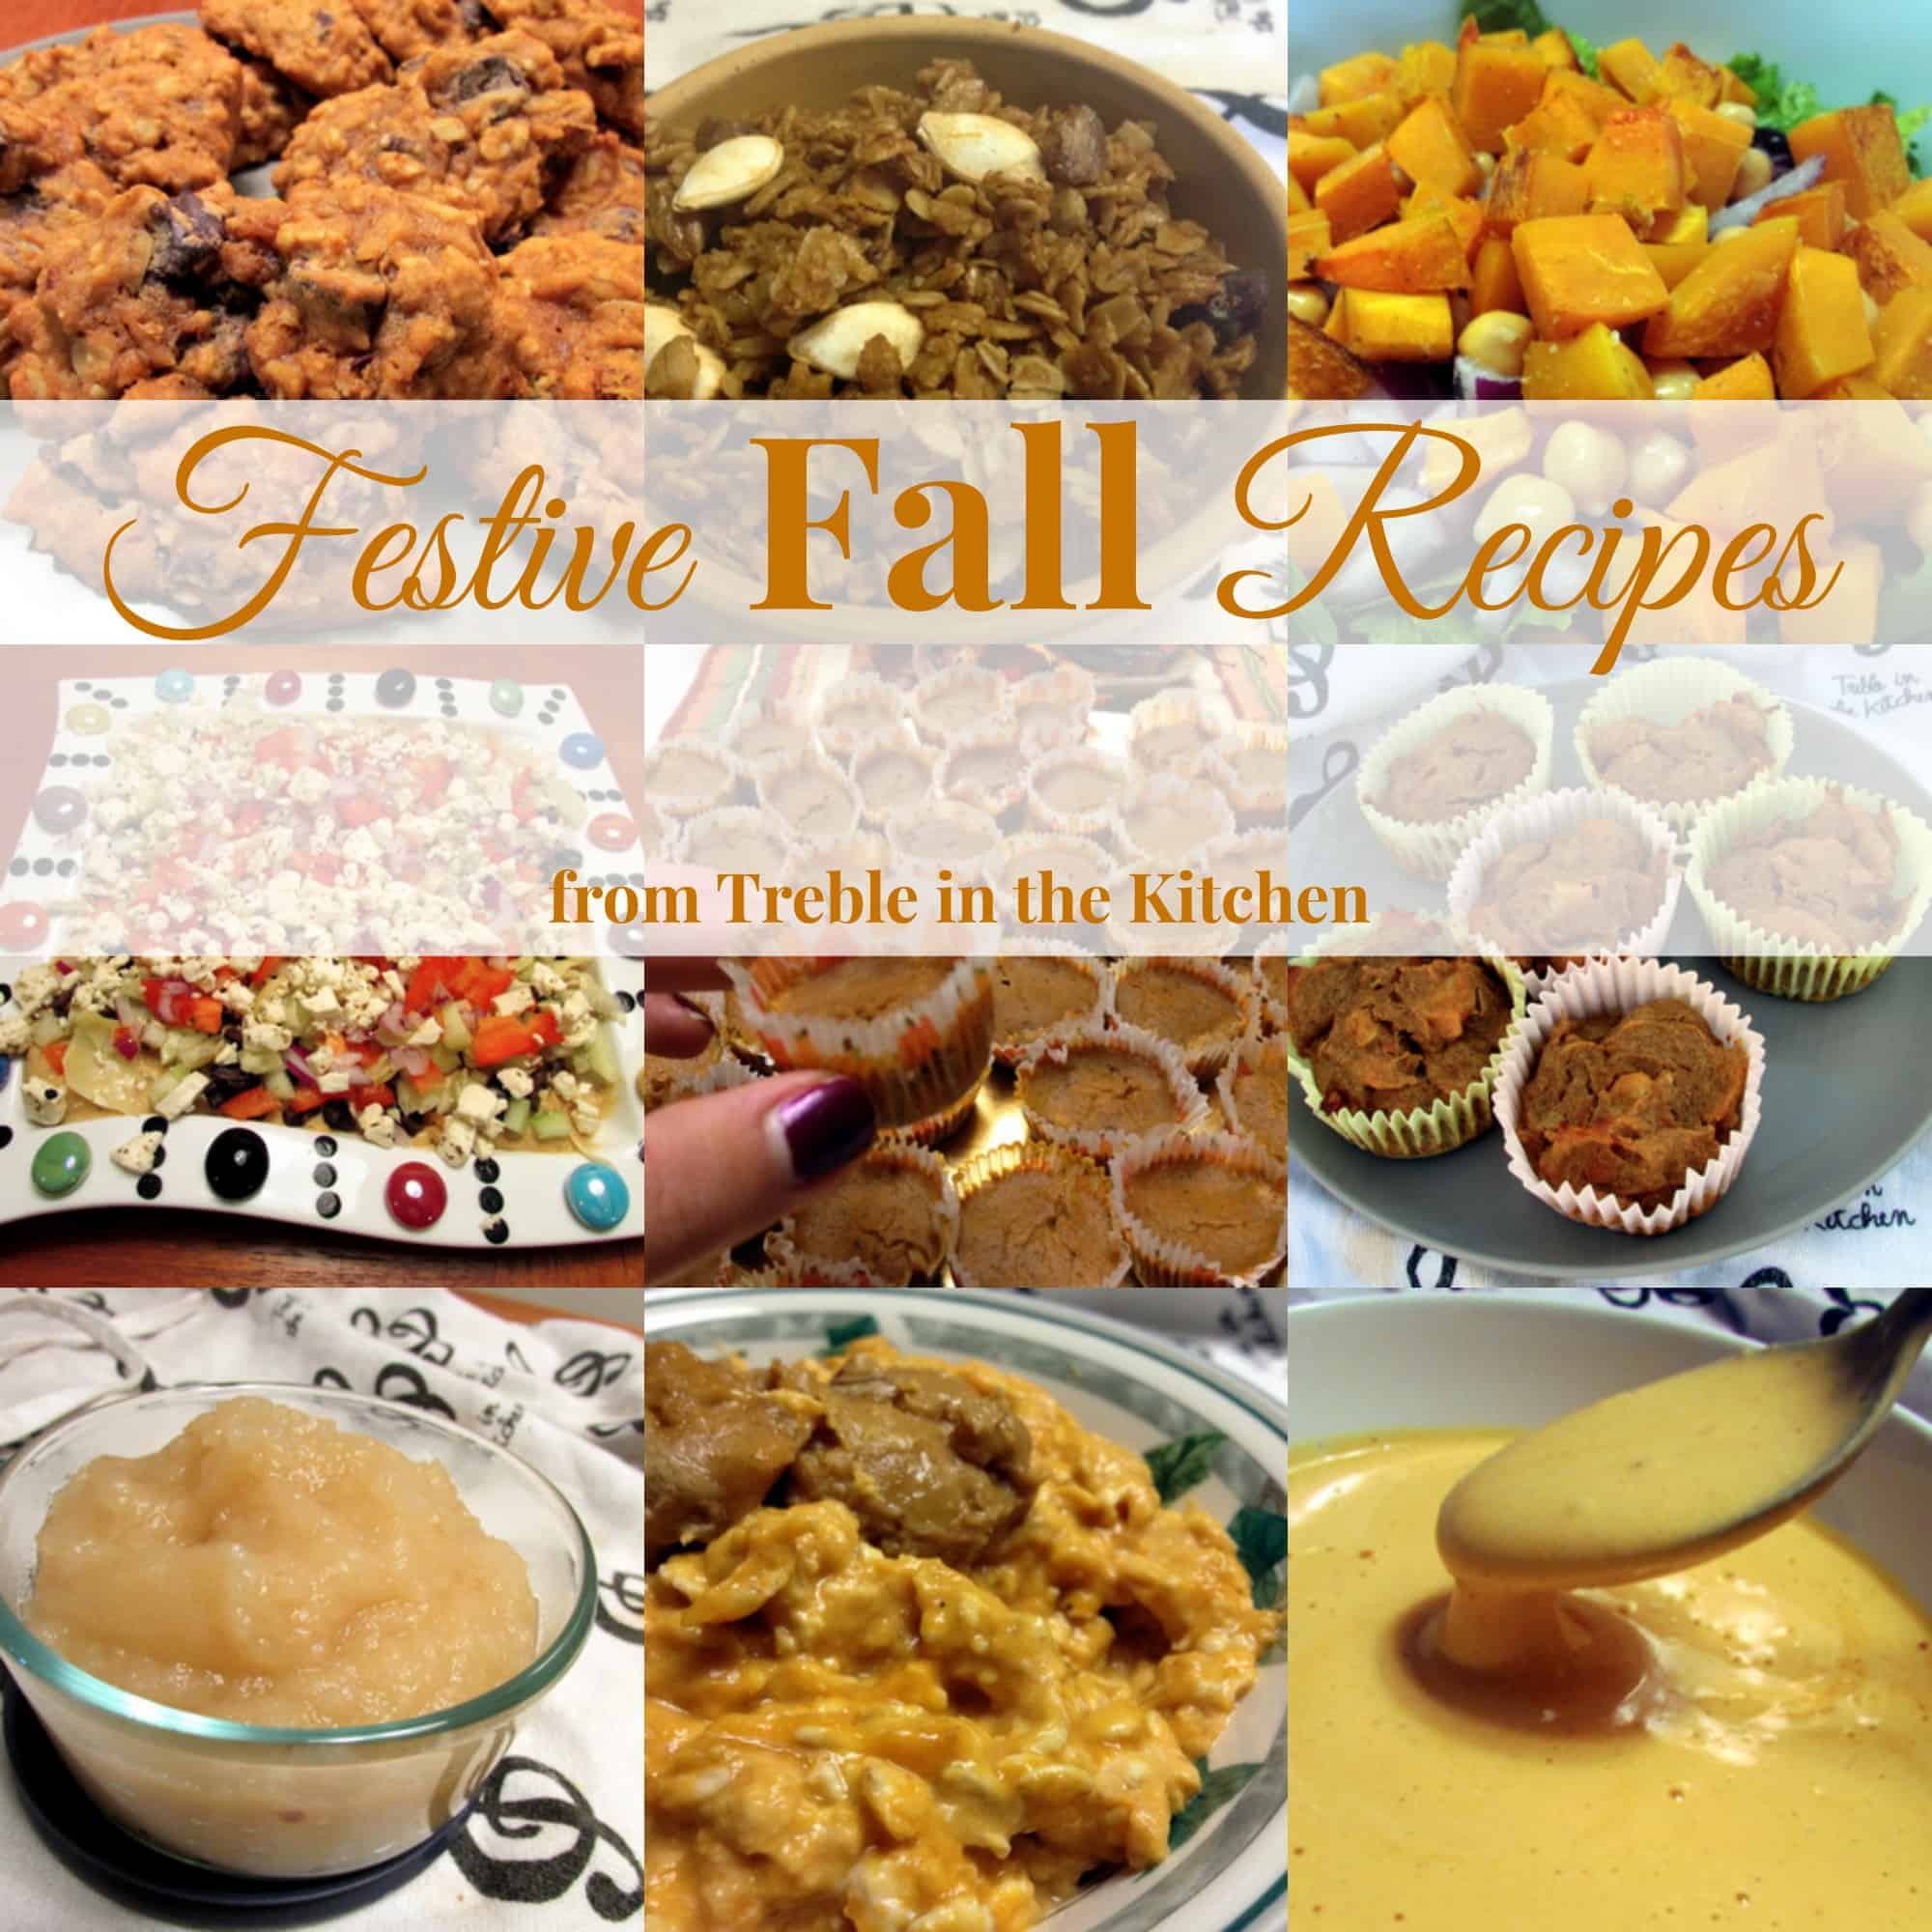 Festive Fall Recipes via Treble in the Kitchen